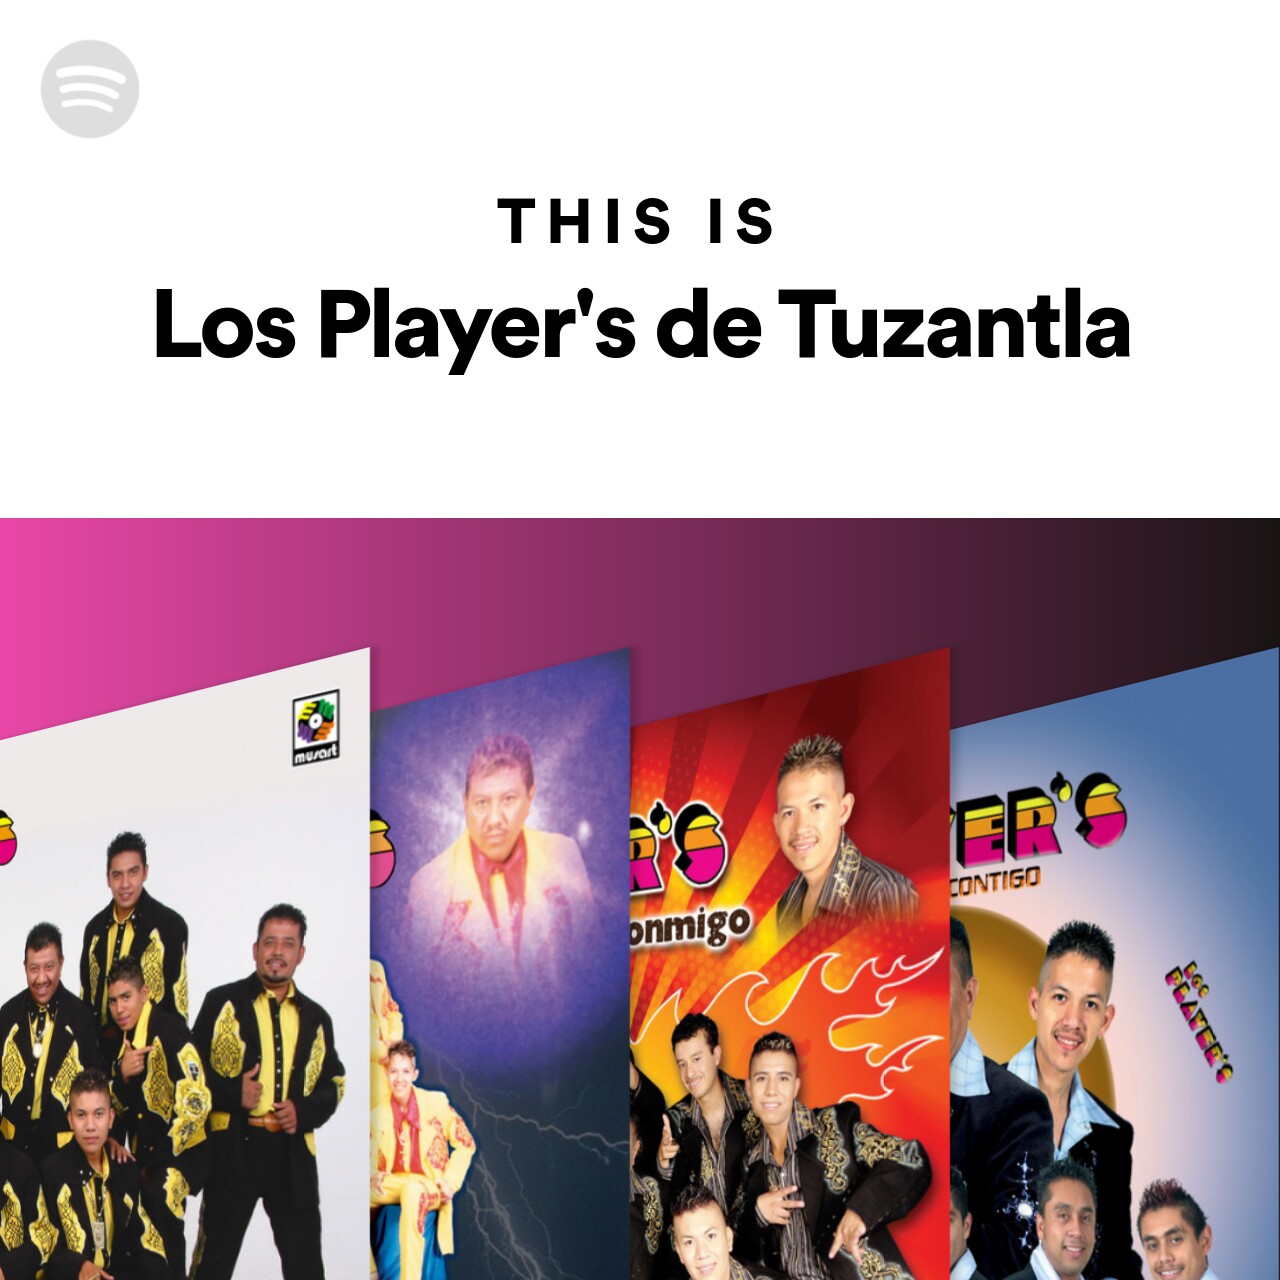 This Is Los Player's de Tuzantla